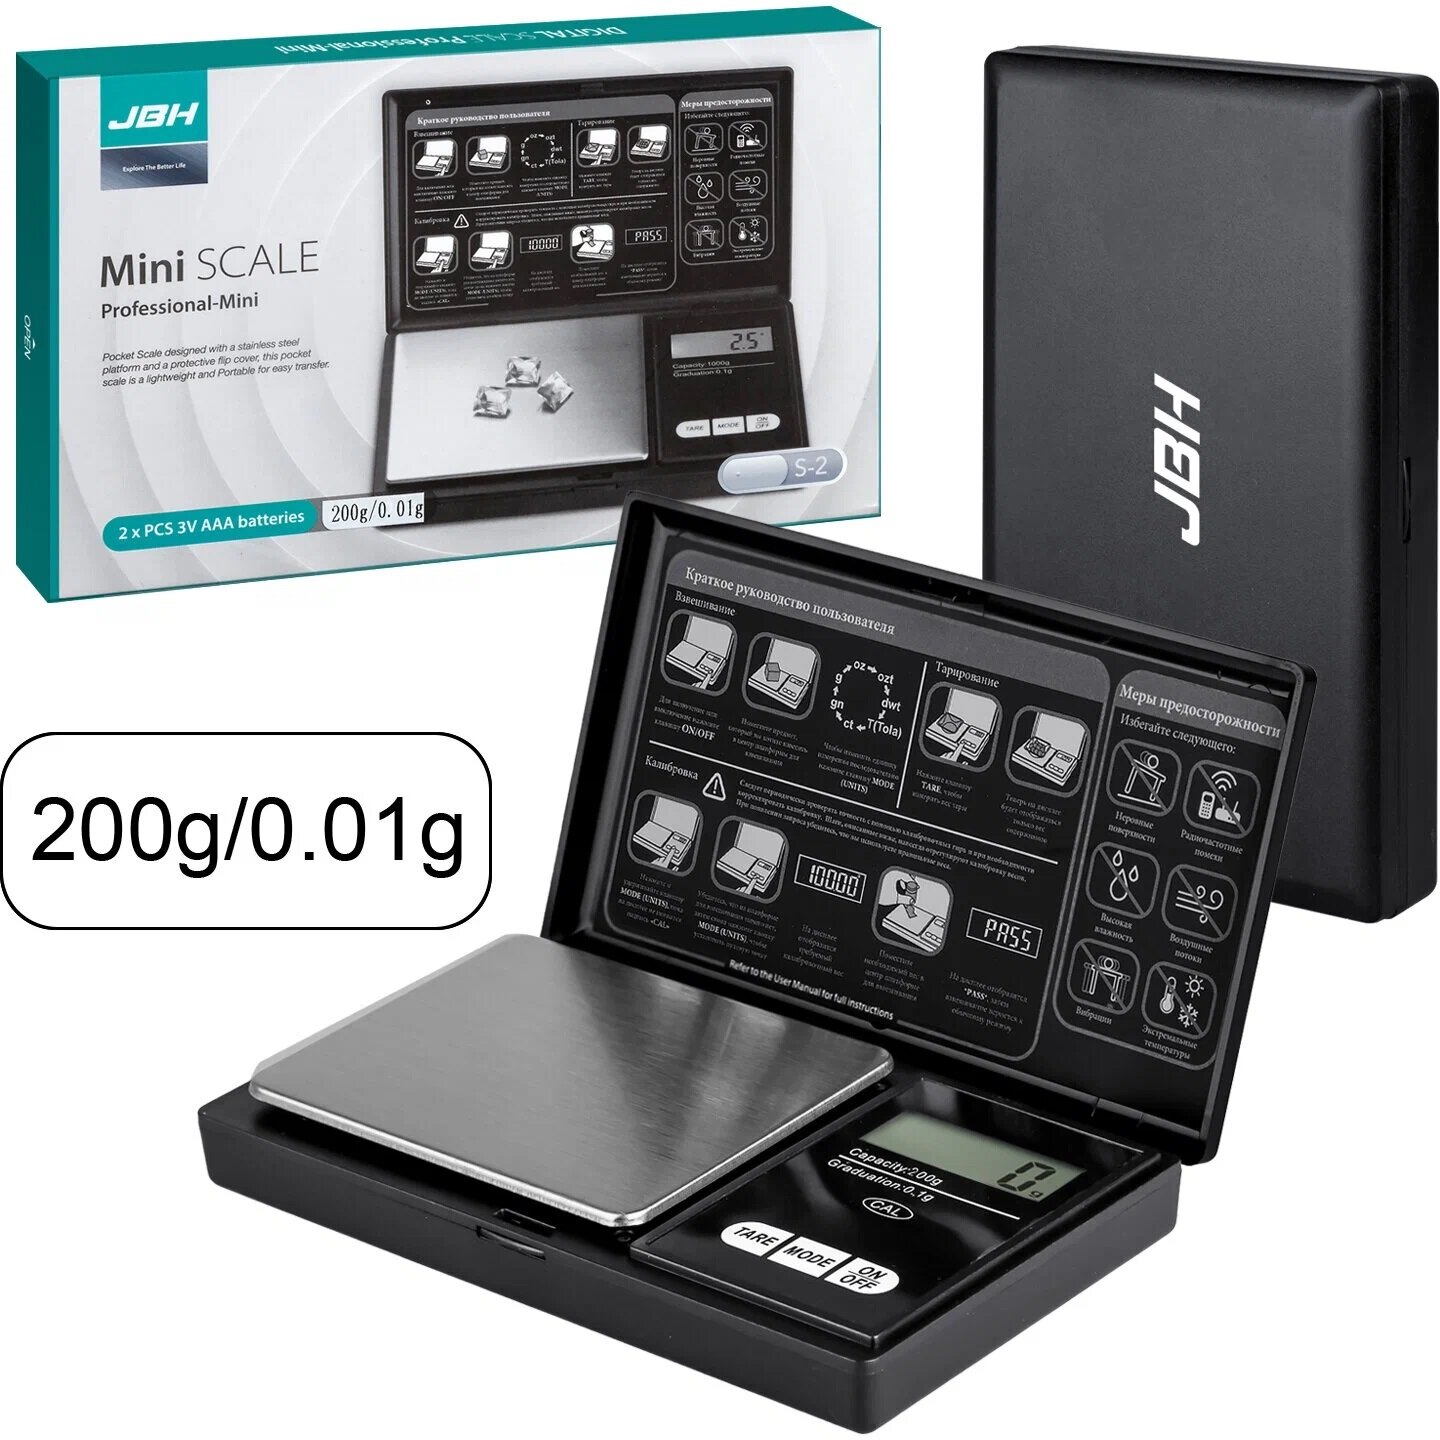 Весы электронные ювелирные 200 г/0,01 г, высокоточные, цифровые, складные, карманные, мини, с подсветкой экрана, батарейки в комплекте (прмт-101875)